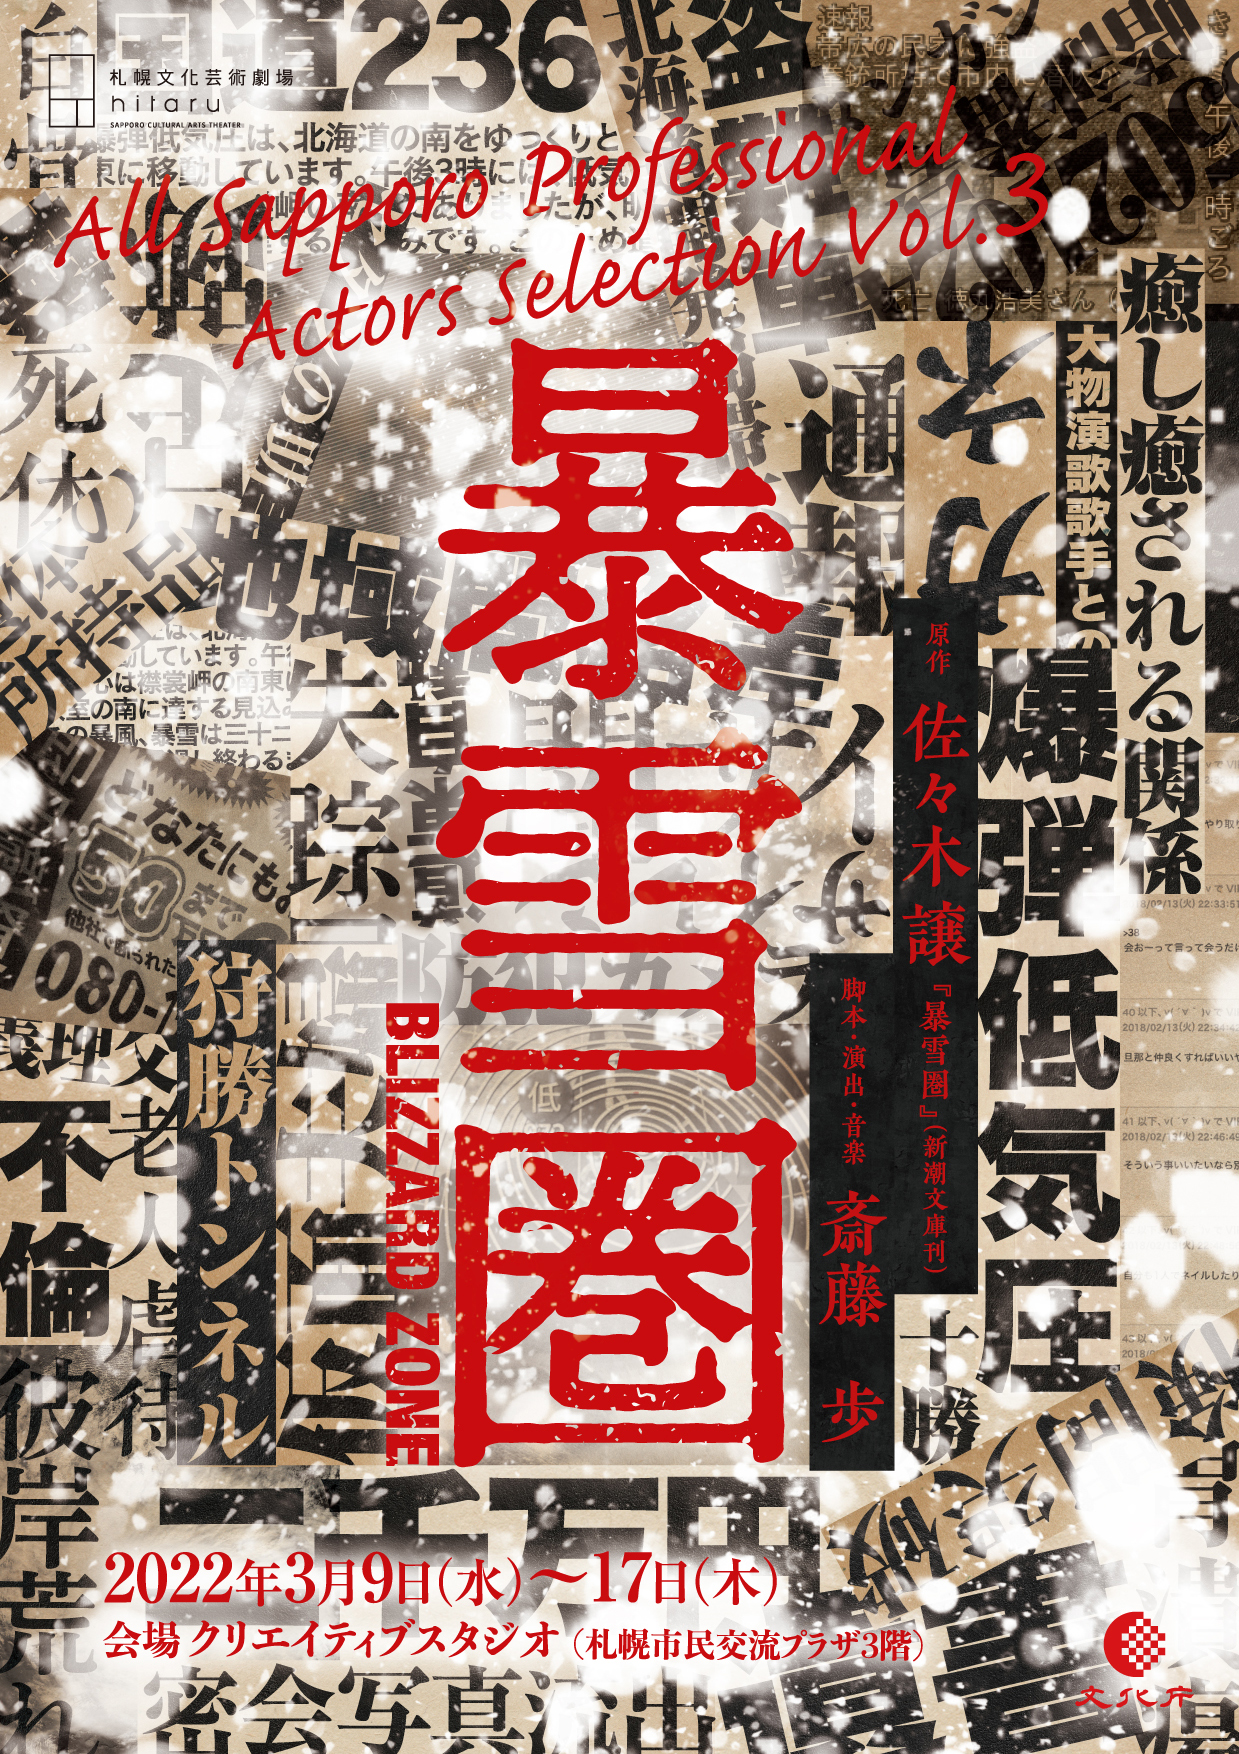 All Sapporo Professional Actors Selection Vol.3Bosetsuken (Blizzard Zone) image